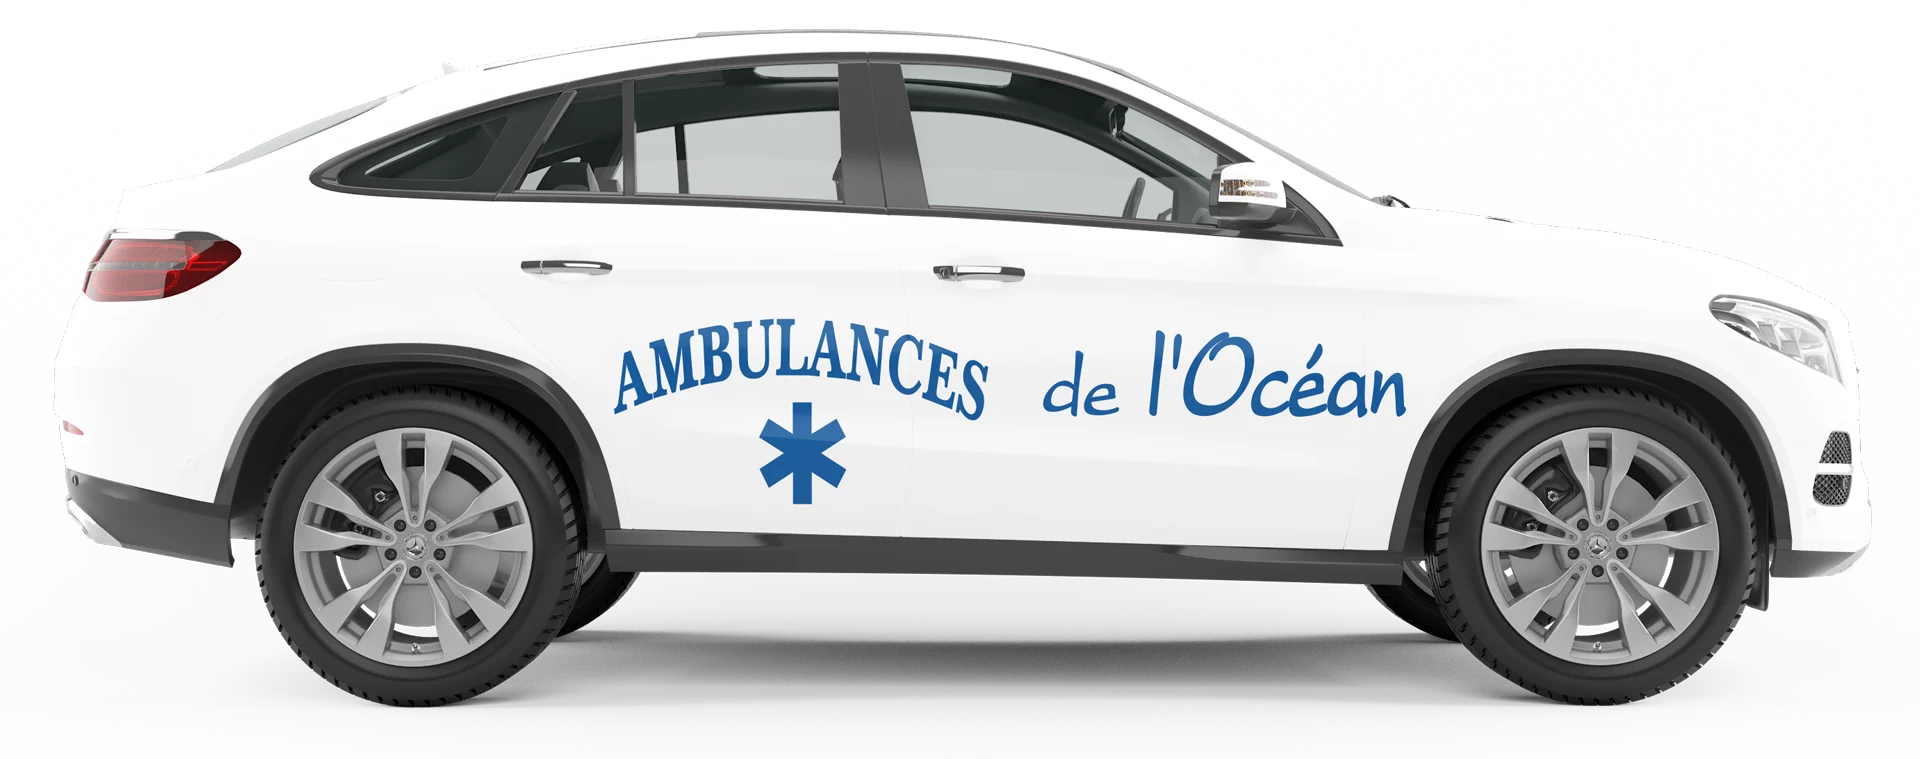 Transport VSL Les Ambulances de l'Océan, ambulances à Jard sur Mer